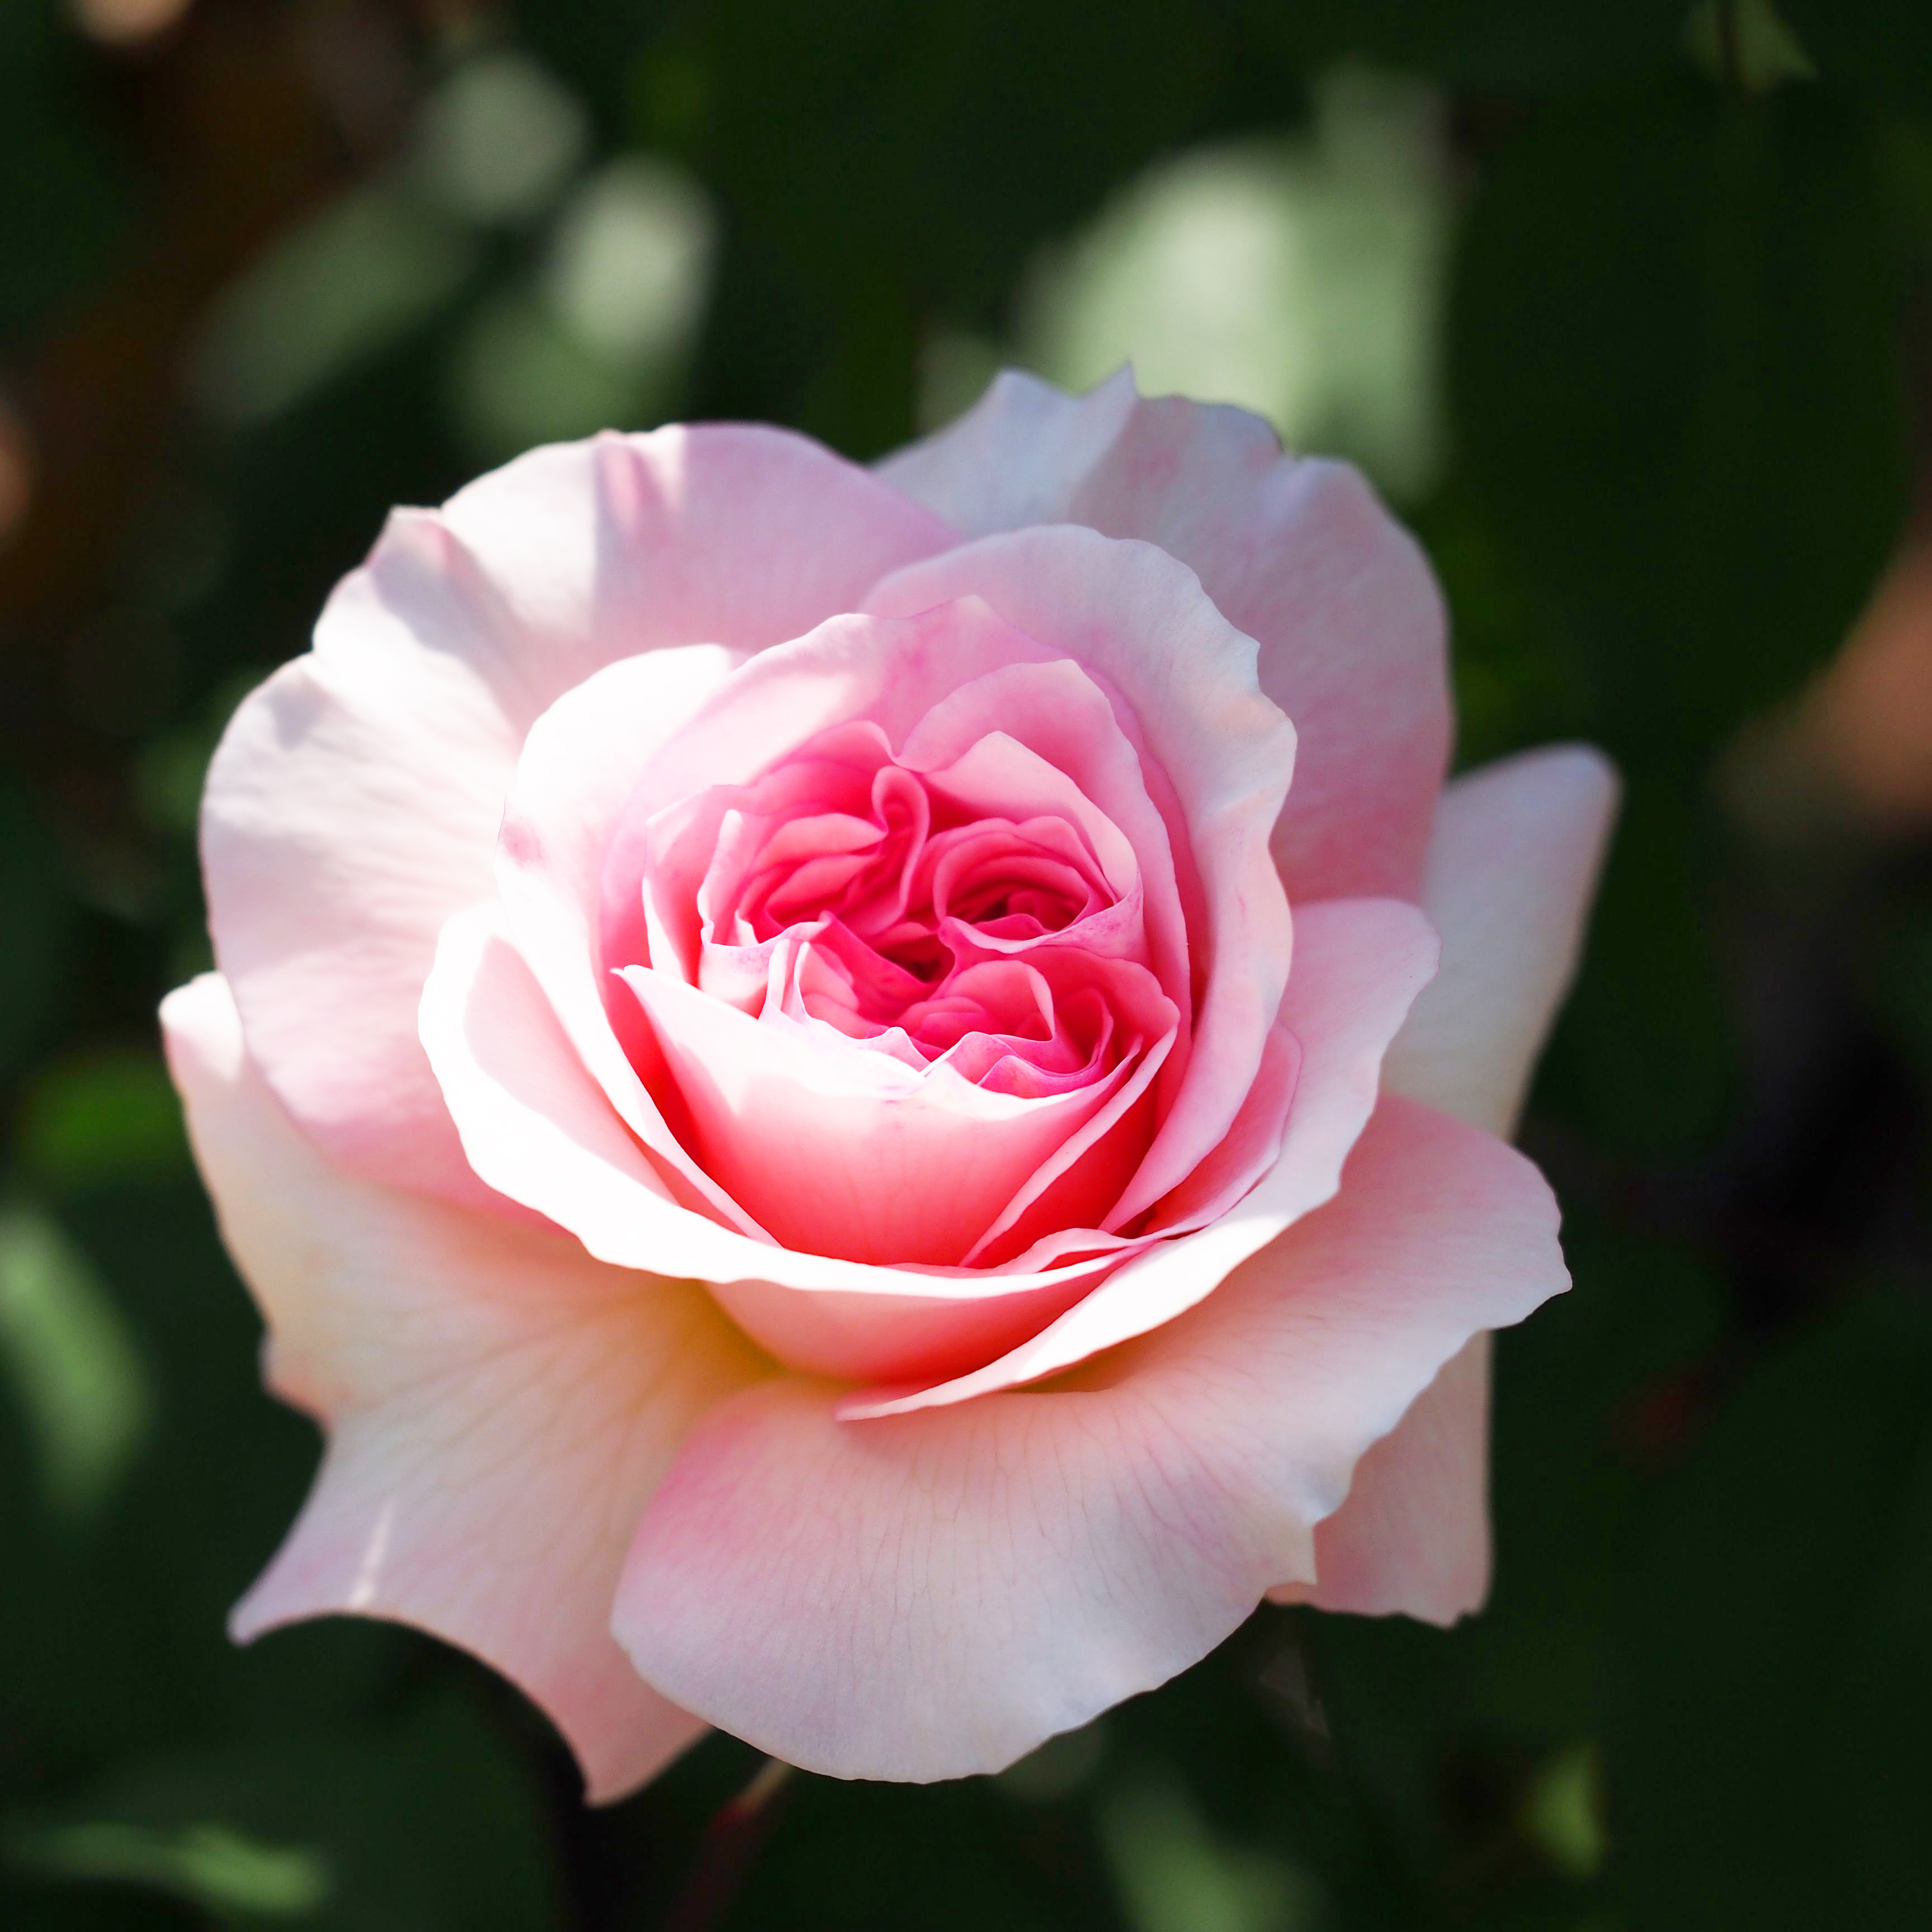 Hobart plaag acuut Rosa 'Queen of Sweden' - Wikipedia